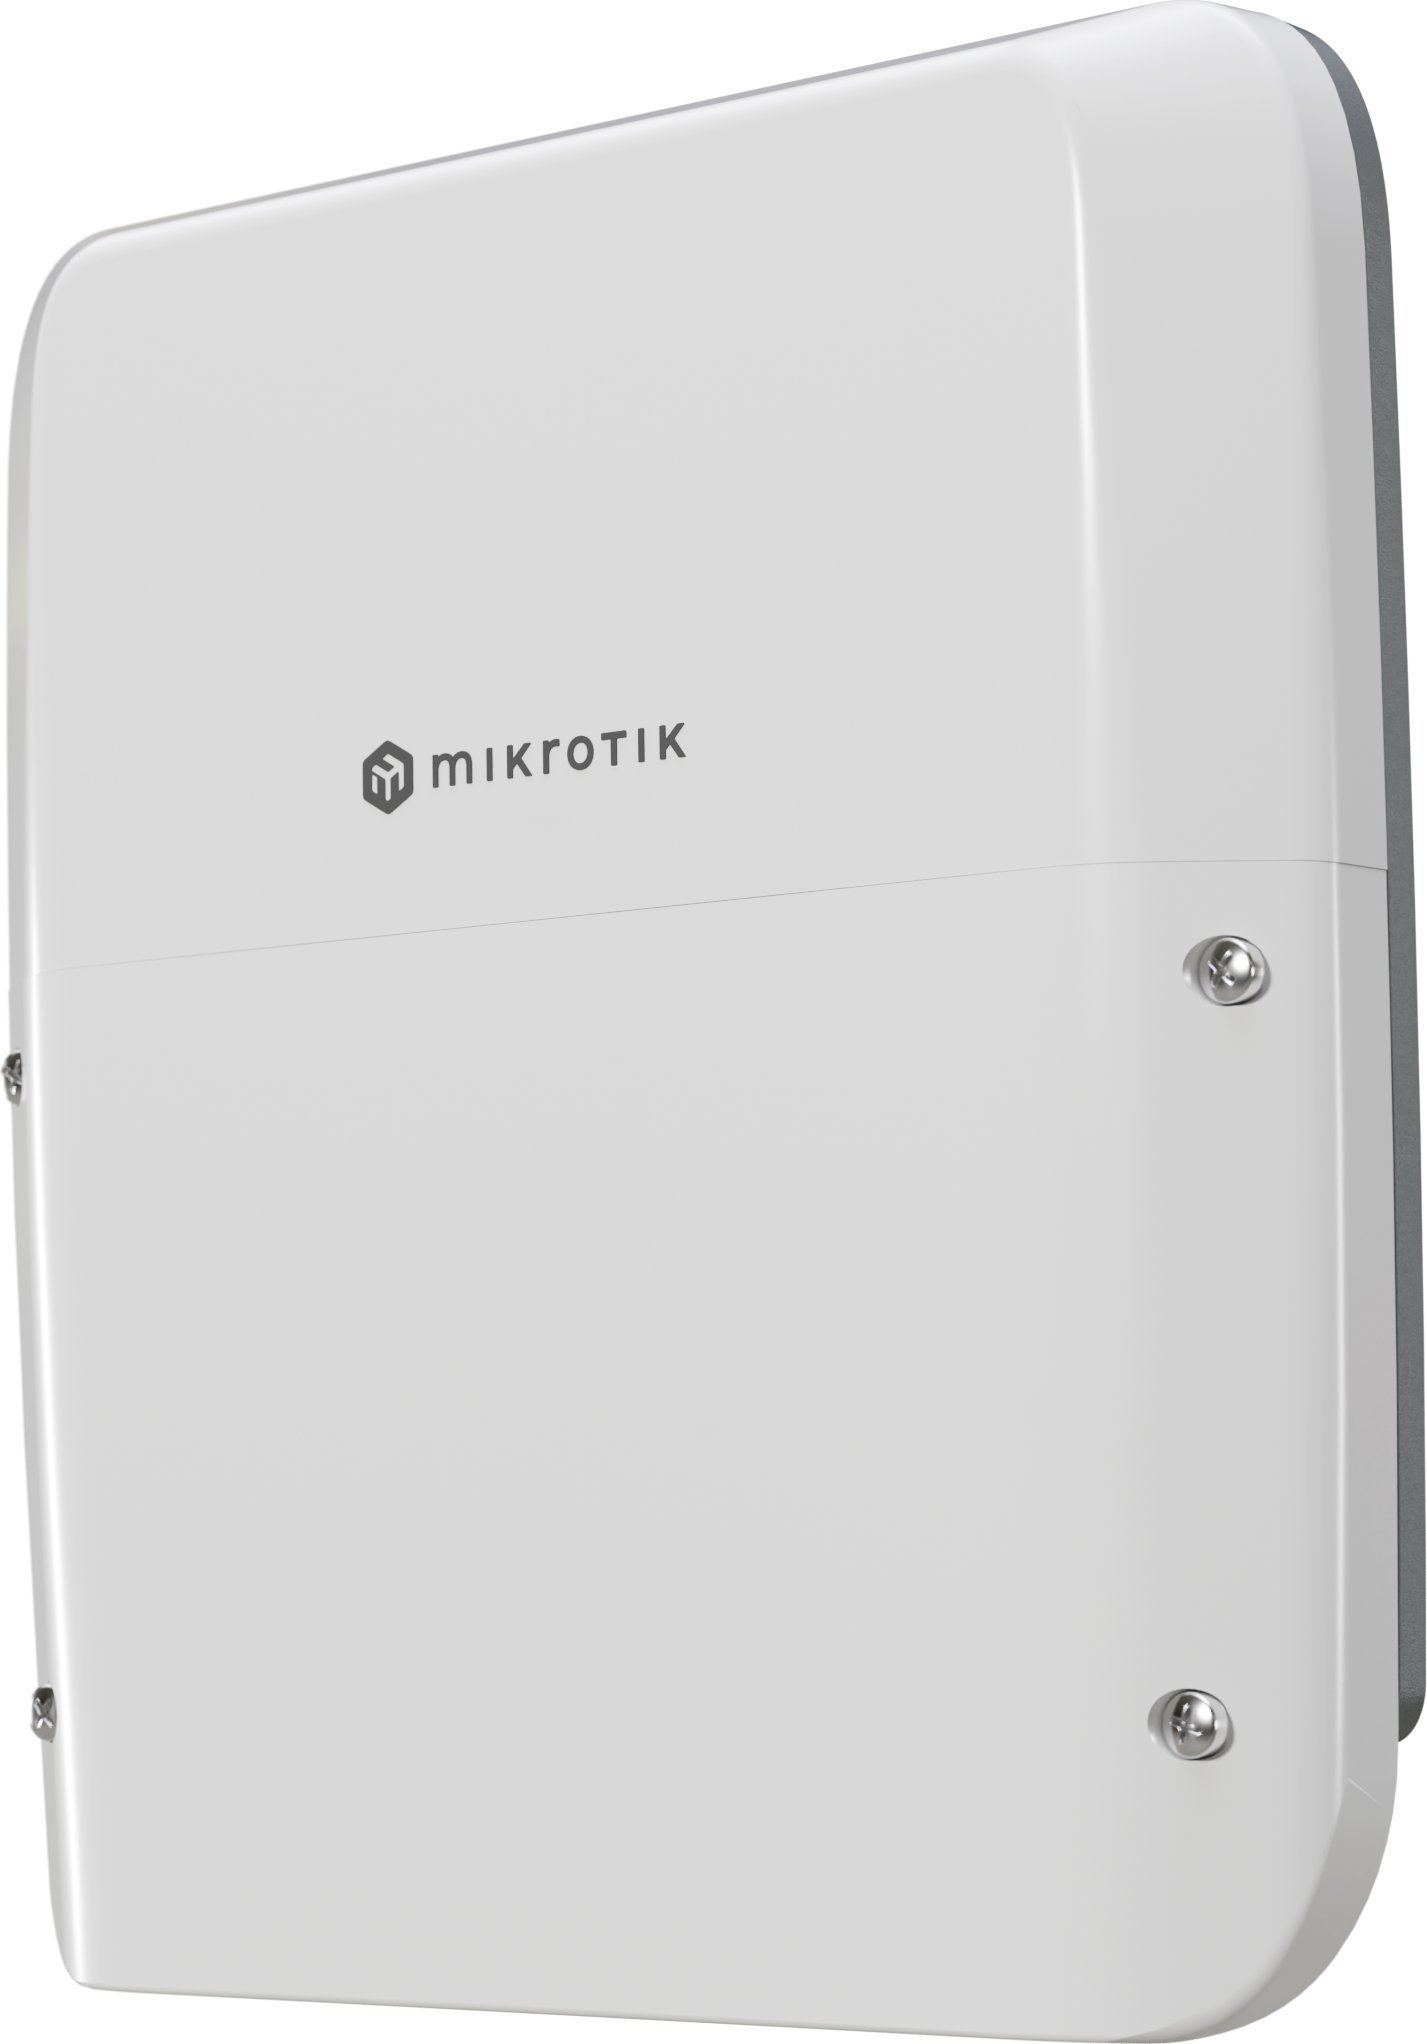 Router MikroTik NET ROUTER 1000M 7PORT/RB5009UPR+S+OUT MIKROTIK